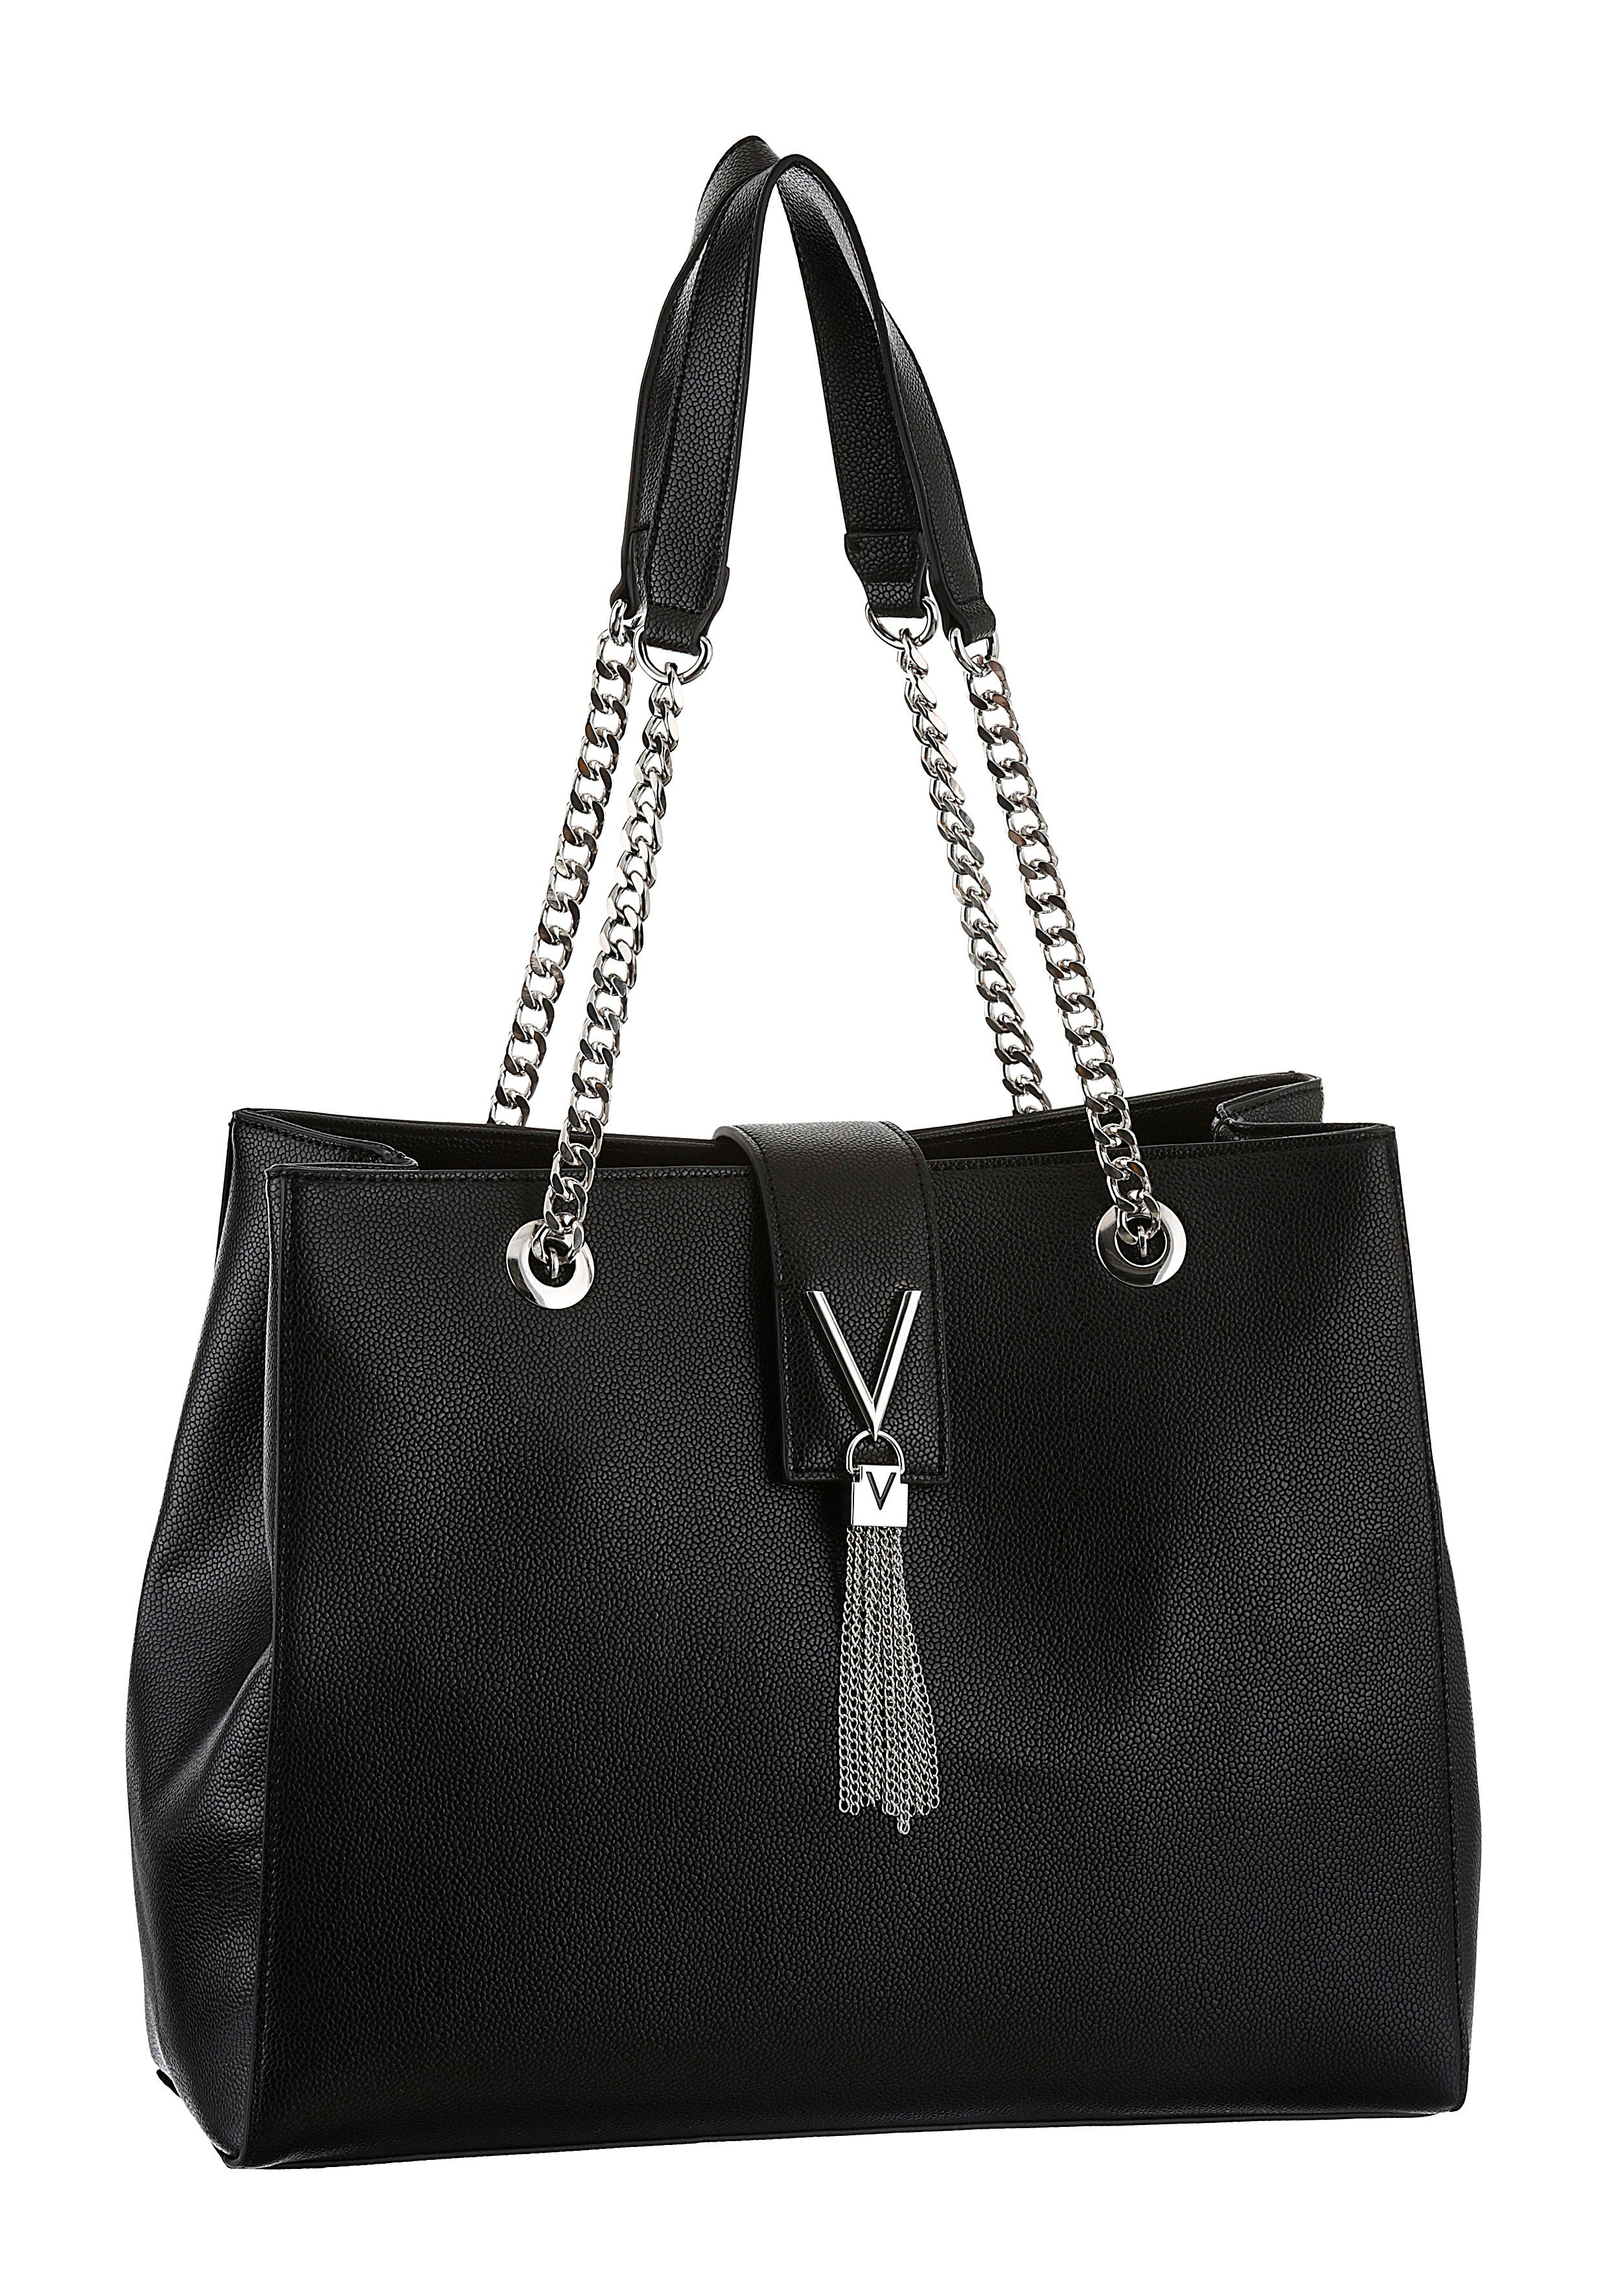 Valentino Bags Damentaschen online kaufen | OTTO